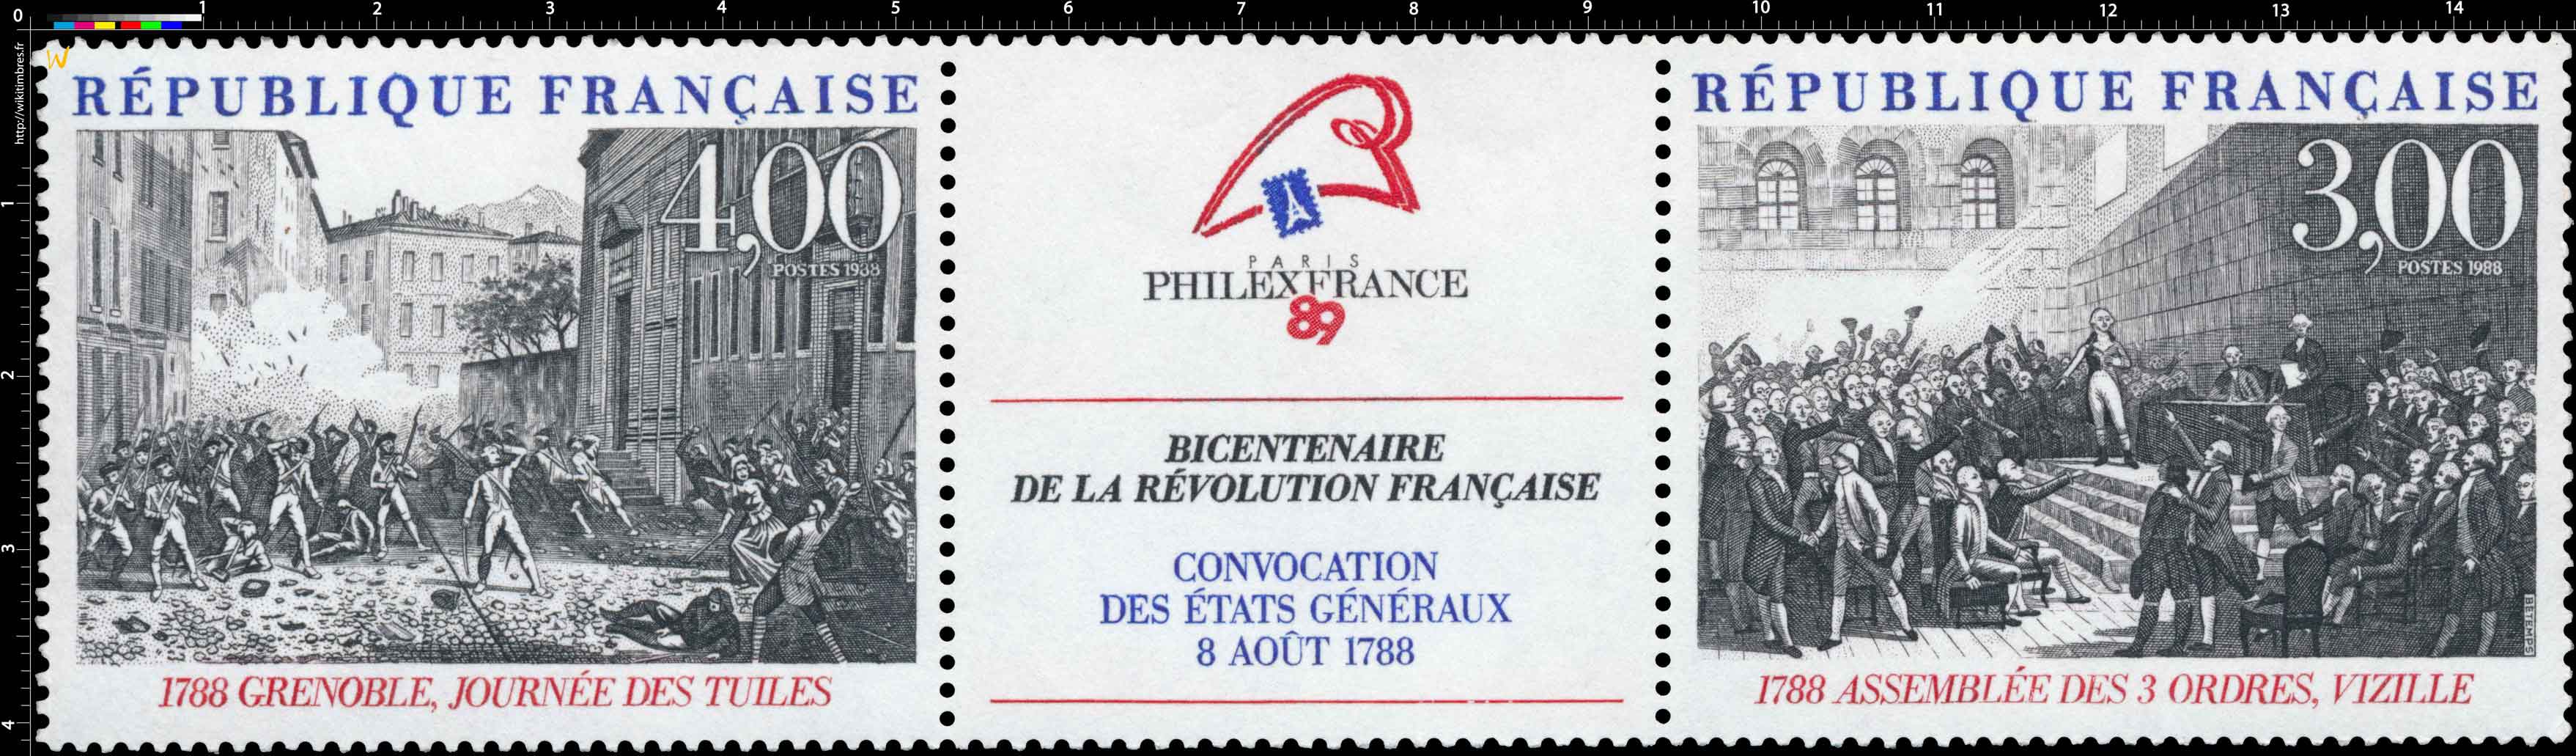 PHILEXFRANCE 89 BICENTENAIRE DE LA RÉVOLUTION FRANÇAISE CONVOCATION DES ÉTATS GÉNÉRAUX